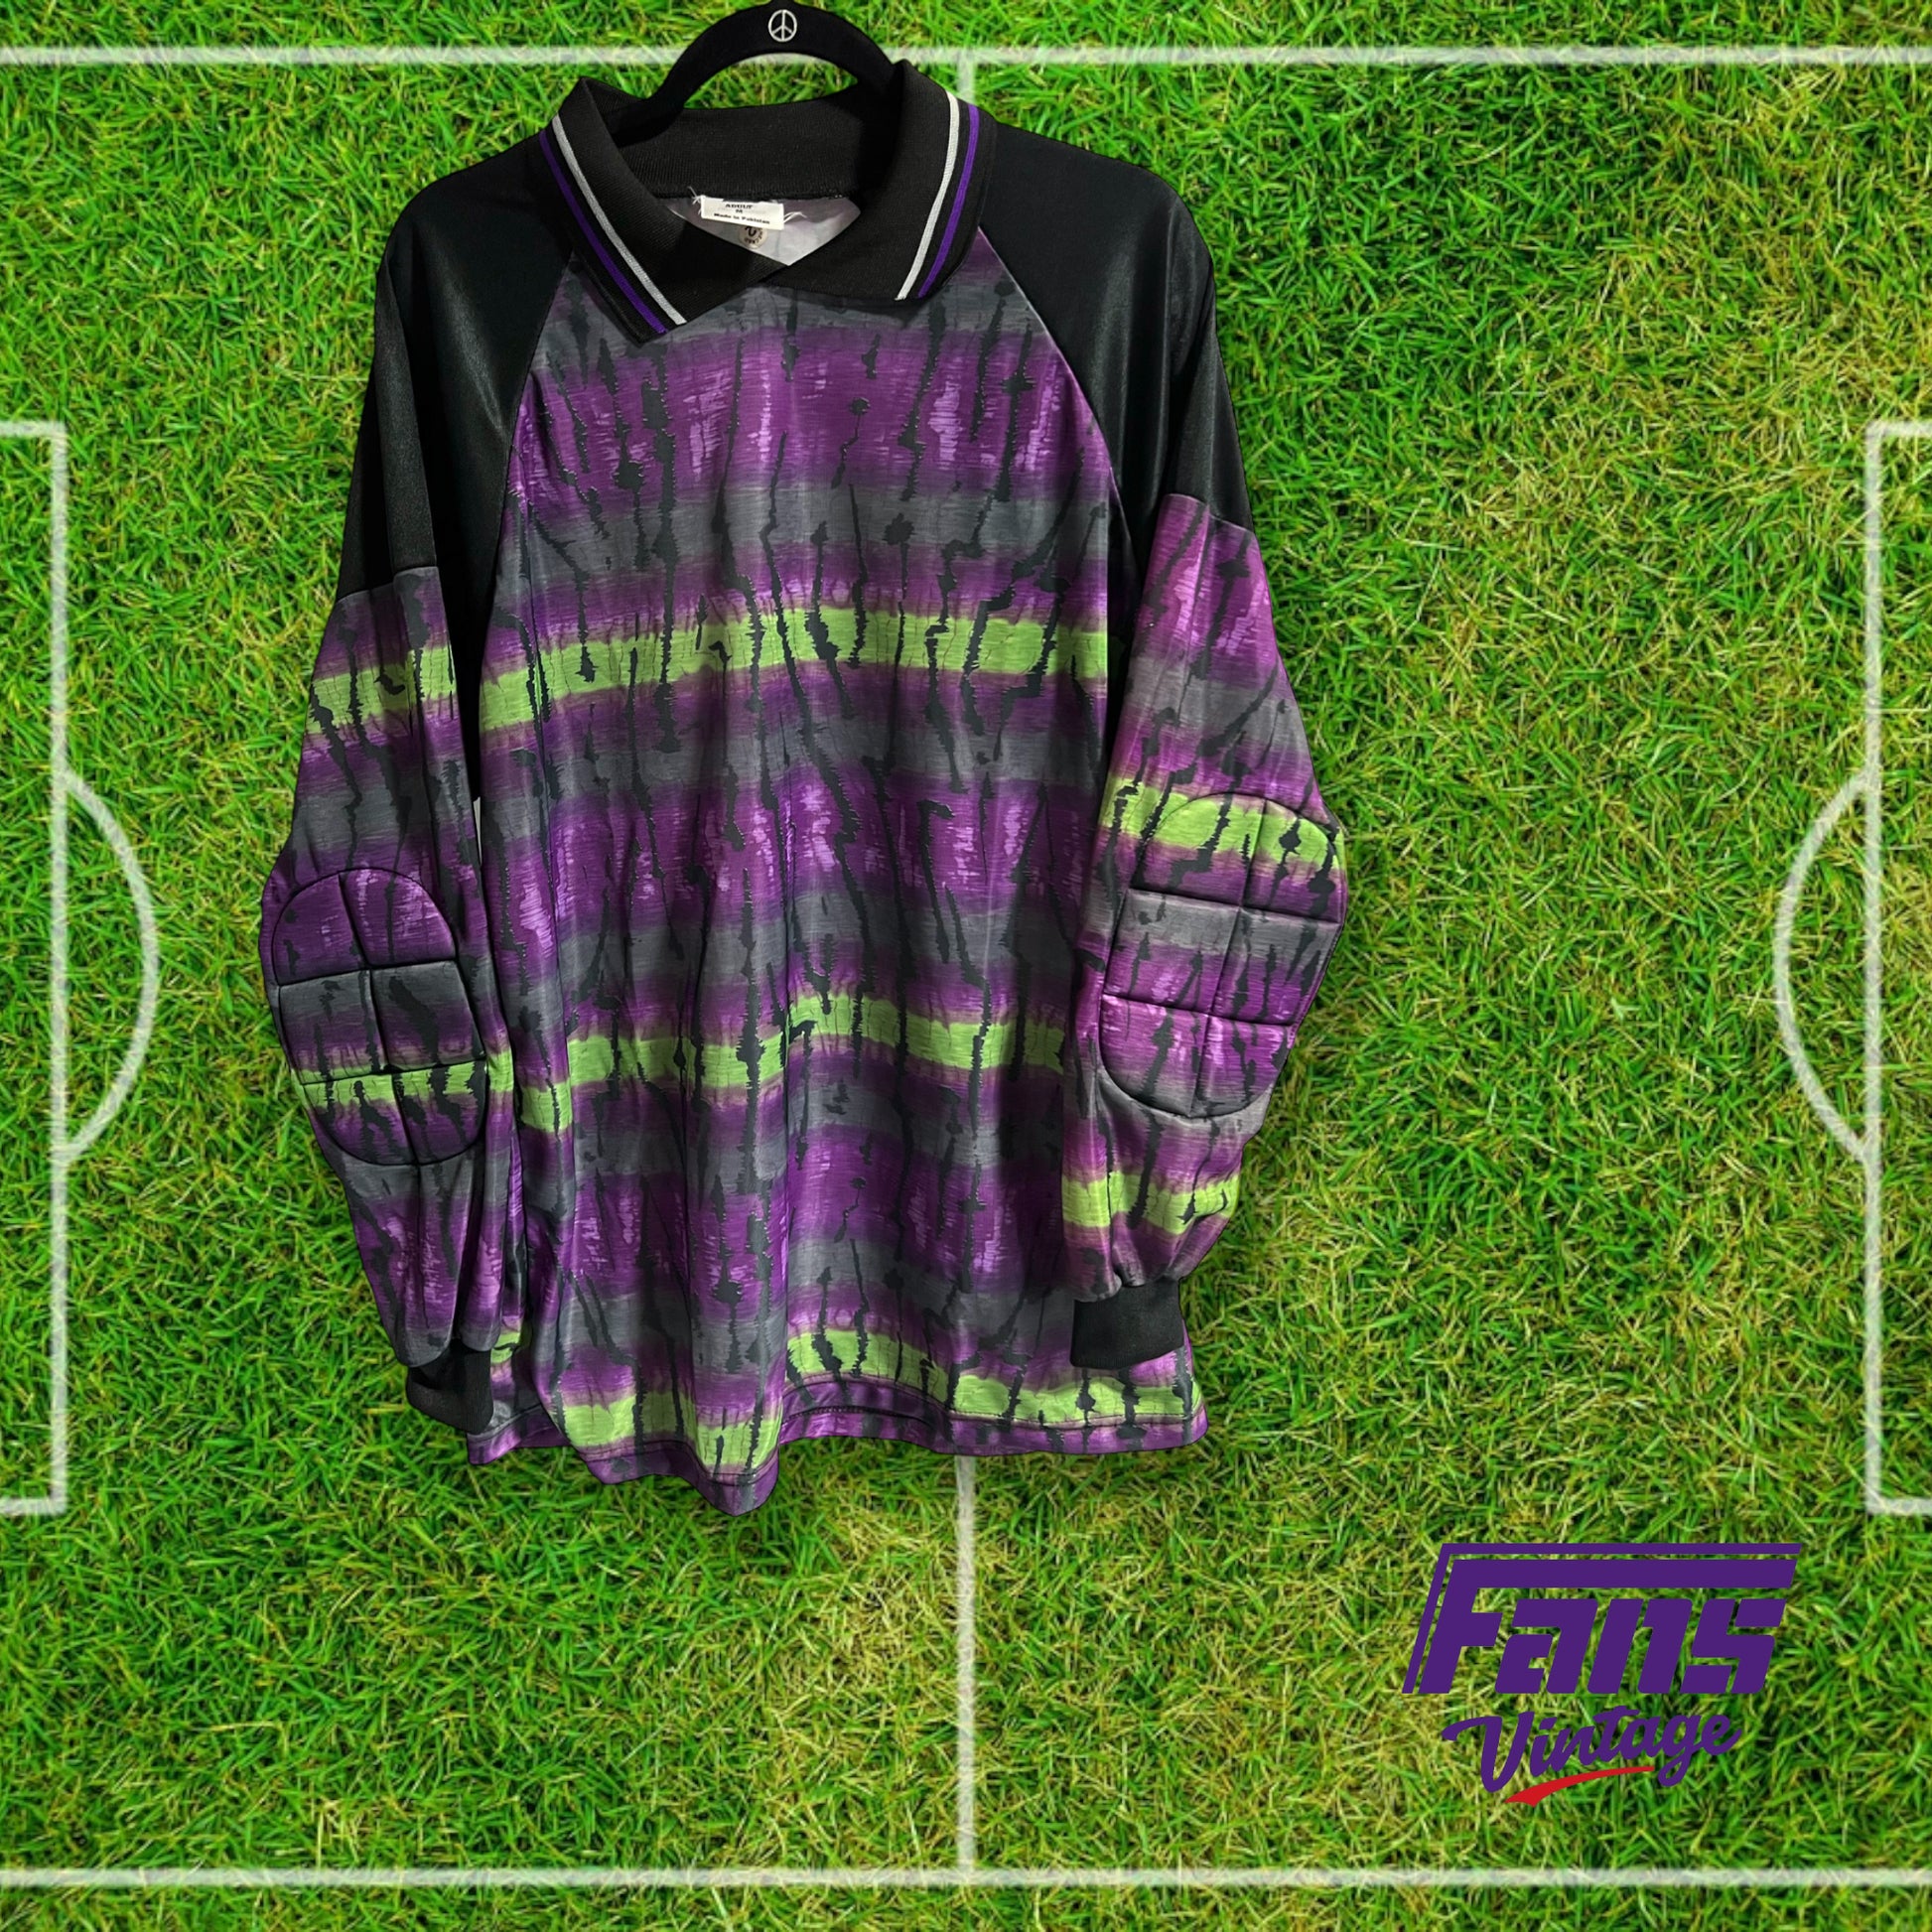 90s vintage goalkeeper jersey – Fans Vintage